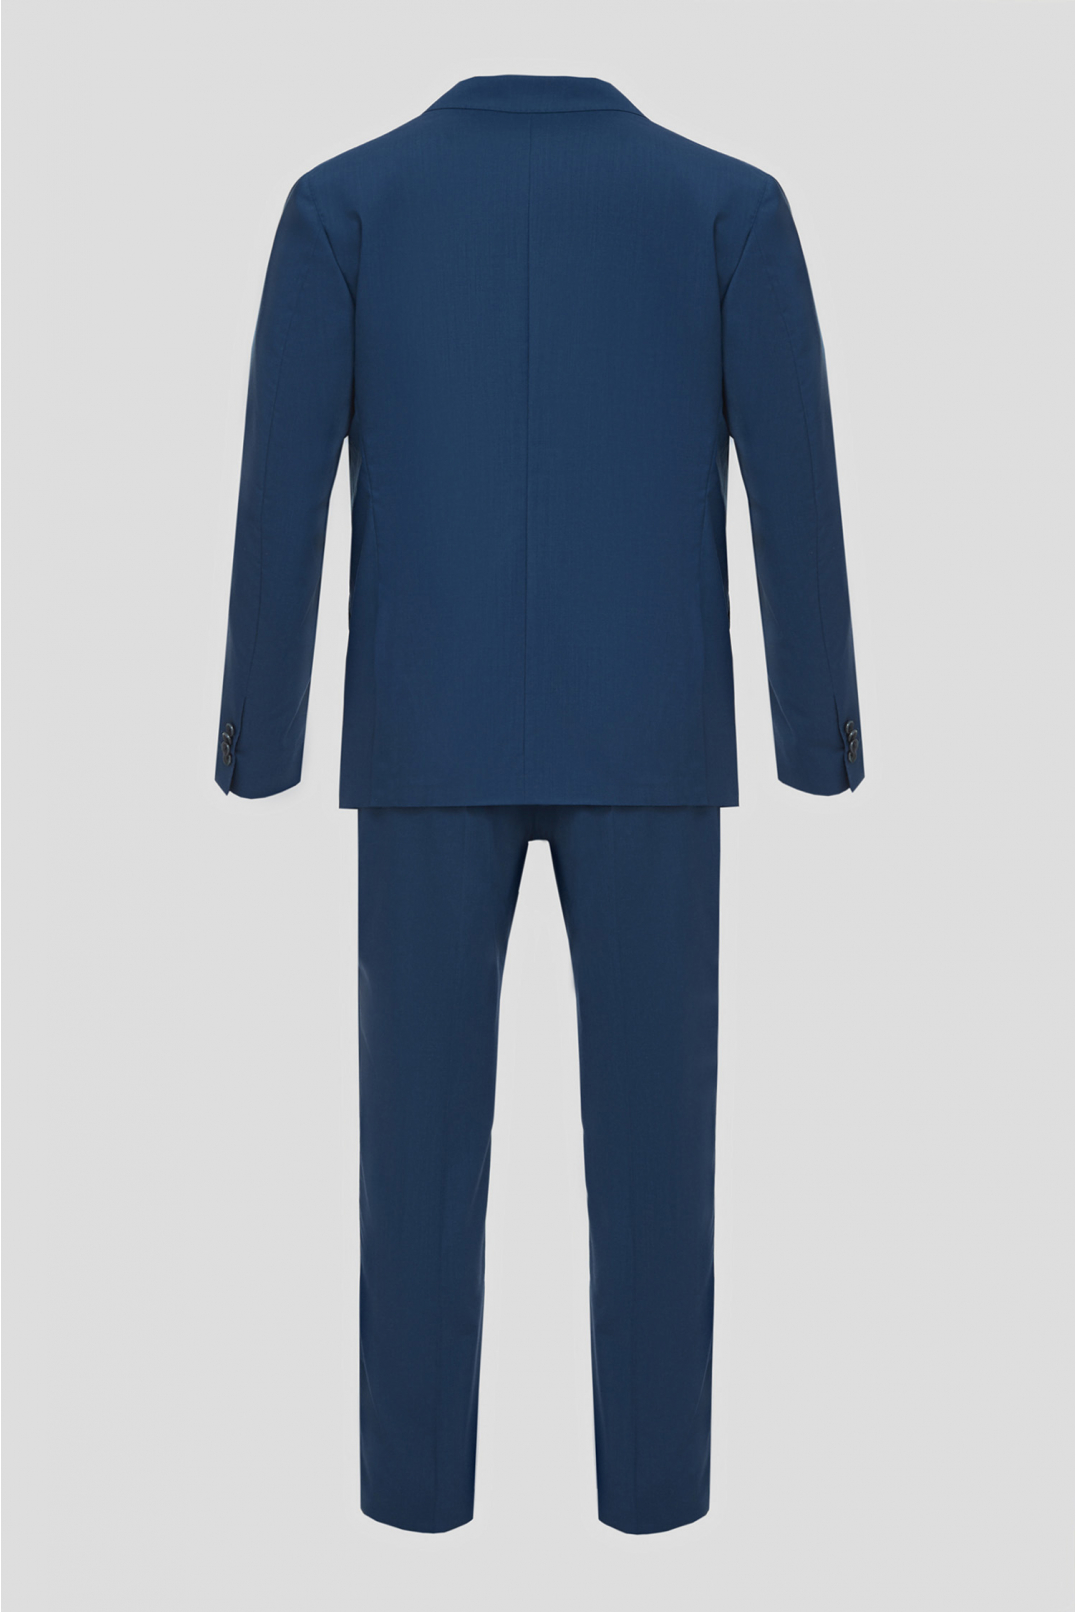 Мужской синий шерстяной костюм (пиджак, брюки) - 2